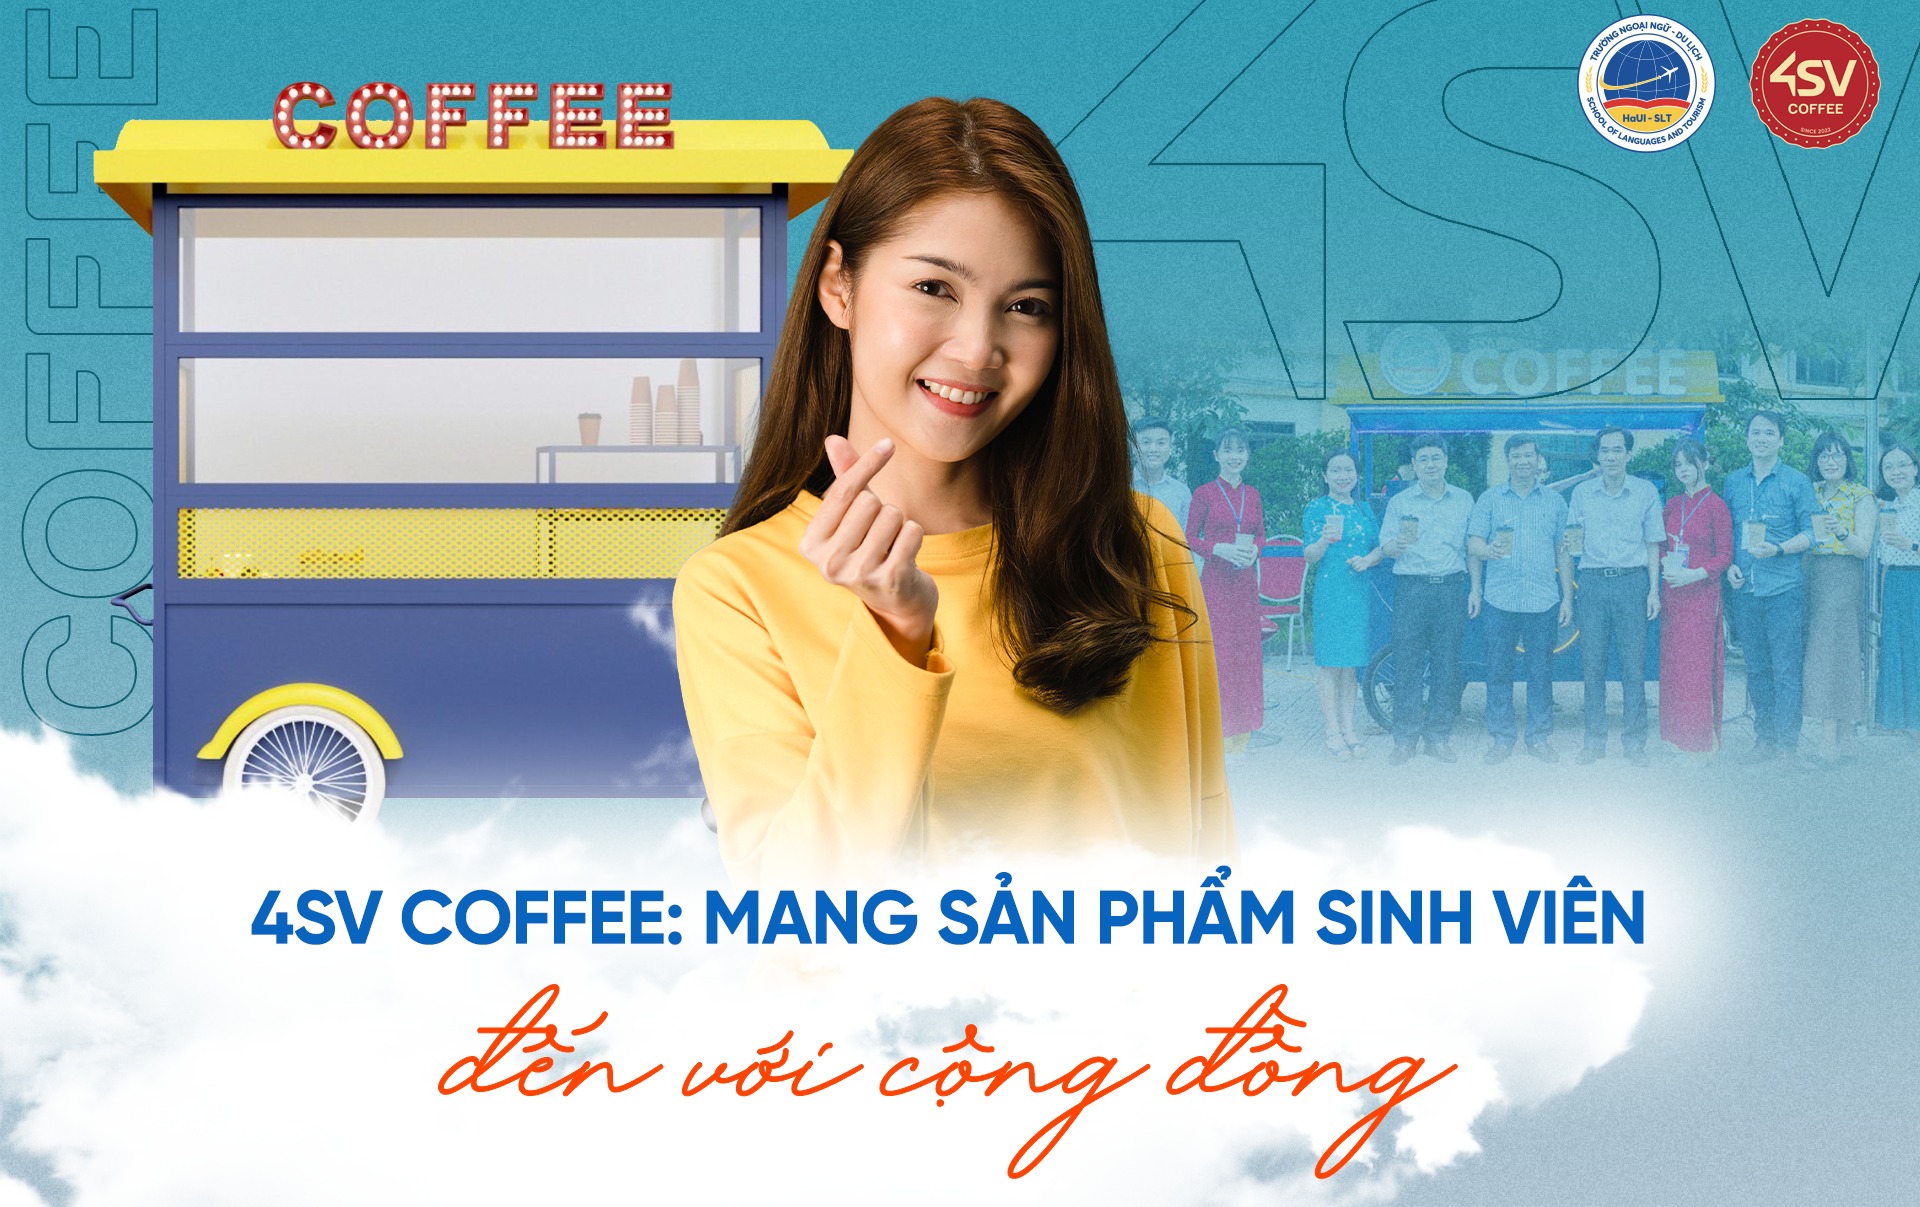 4SV Coffee: Mang sản phẩm sinh viên đến với cộng đồng